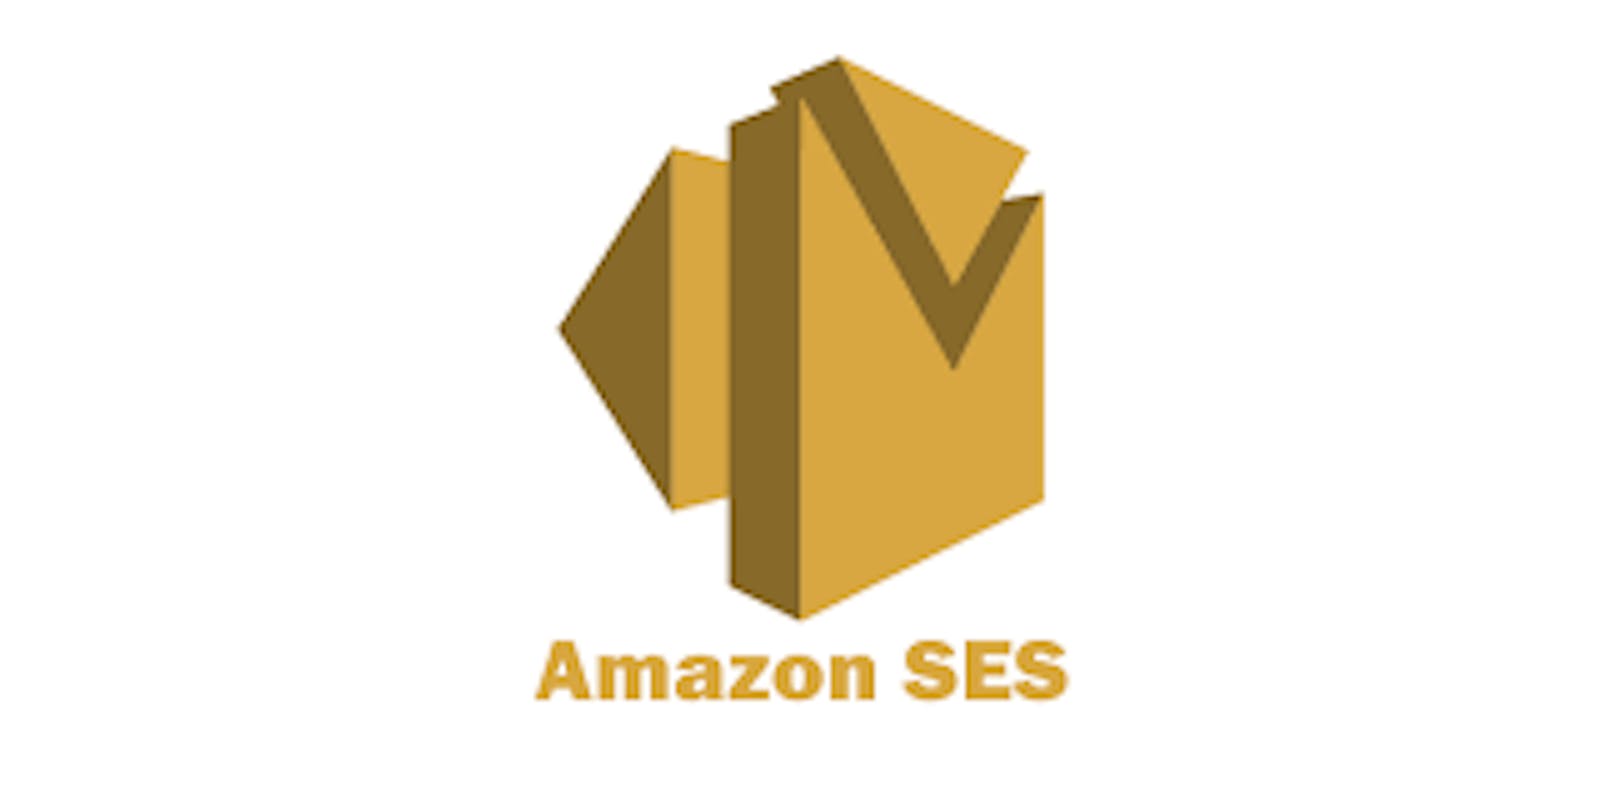 Deploying Amazon SES using Terraform